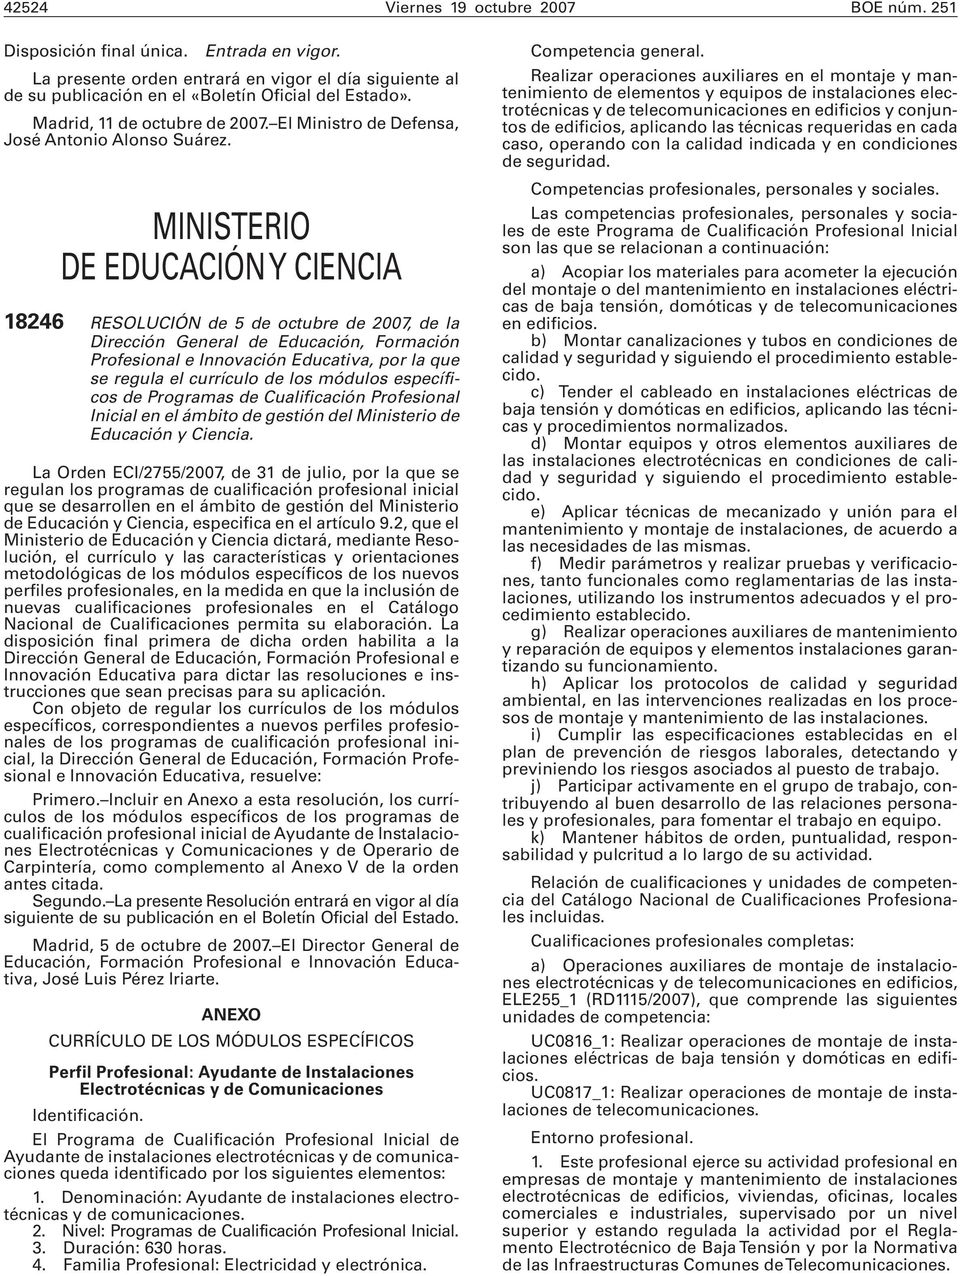 MINISTERIO DE EDUCACIÓN Y CIENCIA 18246 RESOLUCIÓN de 5 de octubre de 2007, de la Dirección General de Educación, Formación Profesional e Innovación Educativa, por la que se regula el currículo de